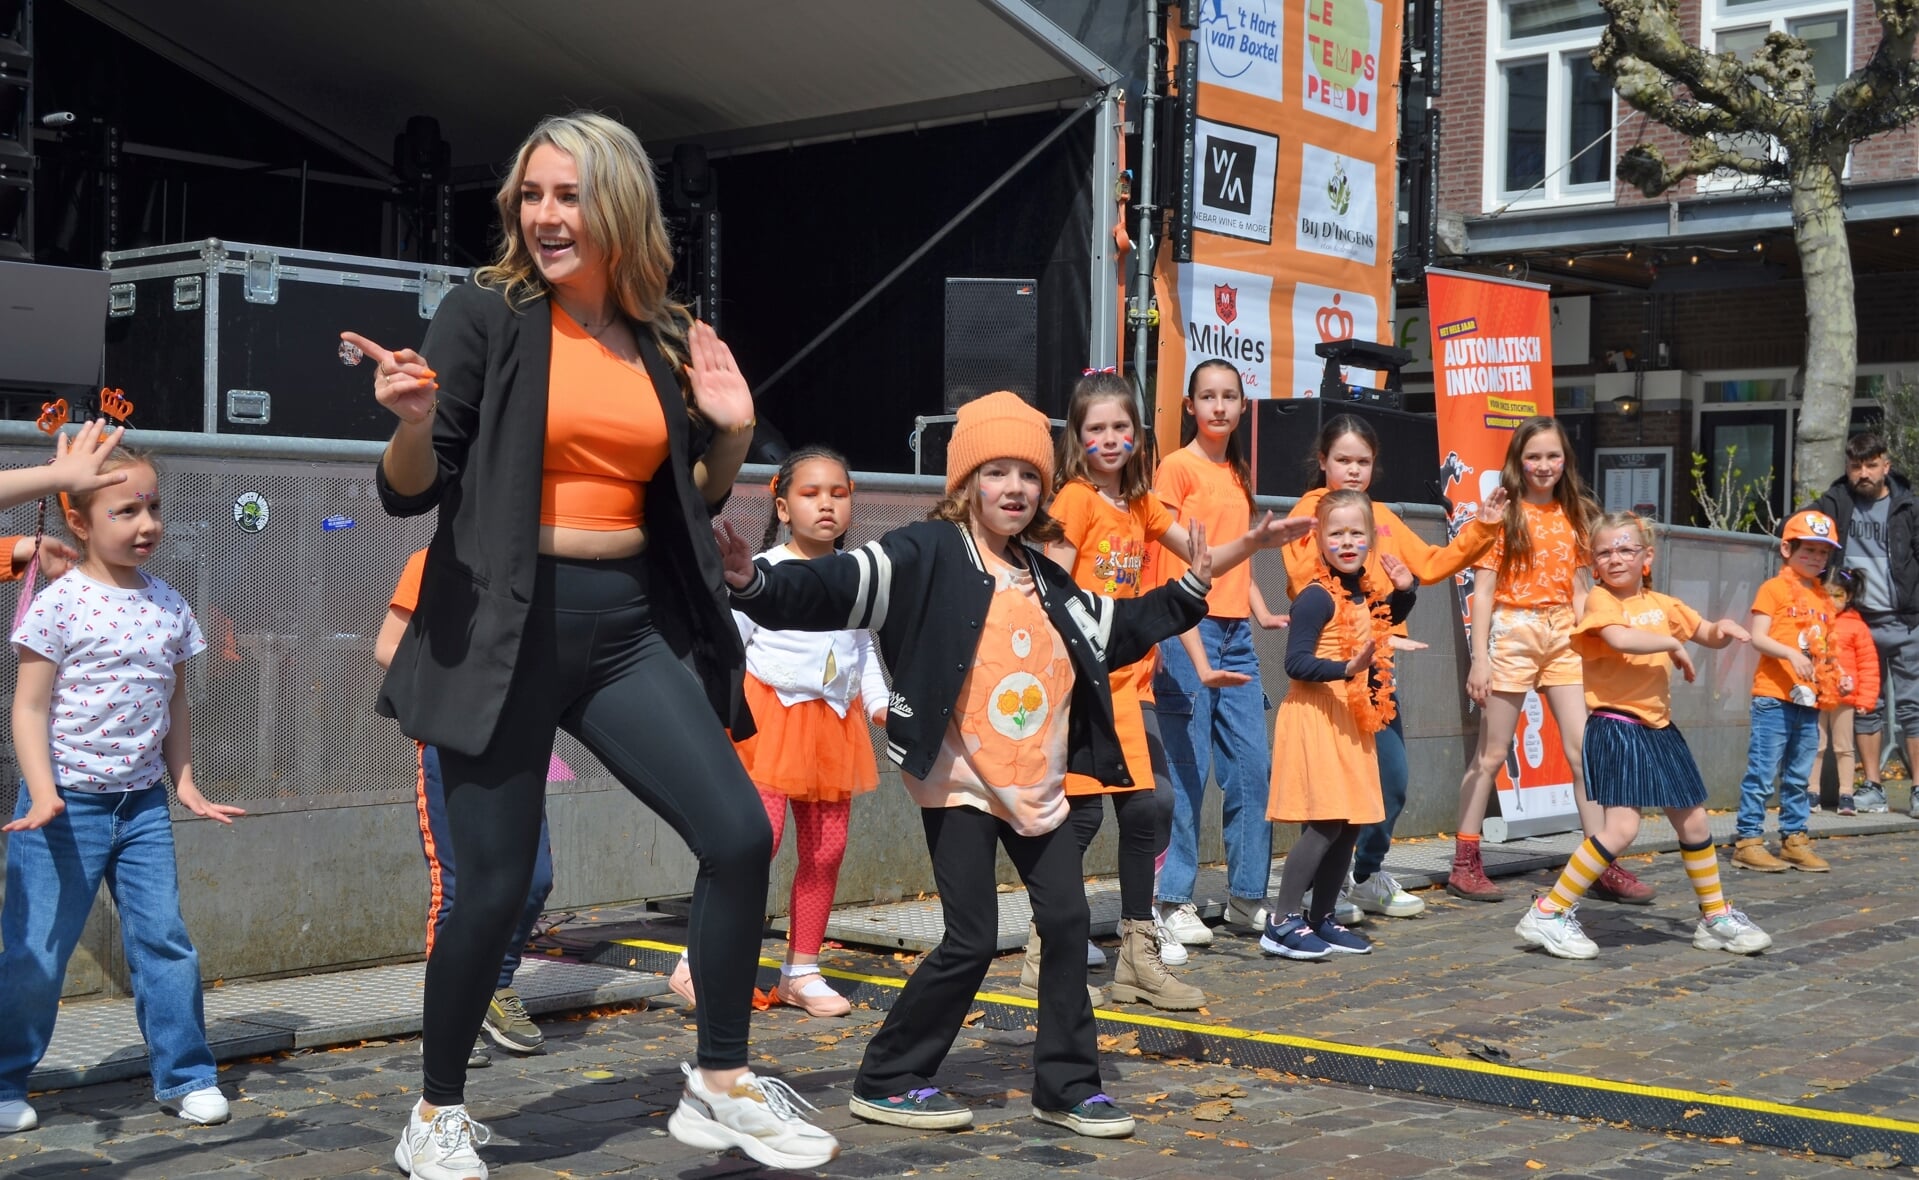 De kinderen vermaakten zich opperbest tijdens de oranjeactiviteiten op Koningsdag in het Boxtelse centrum.